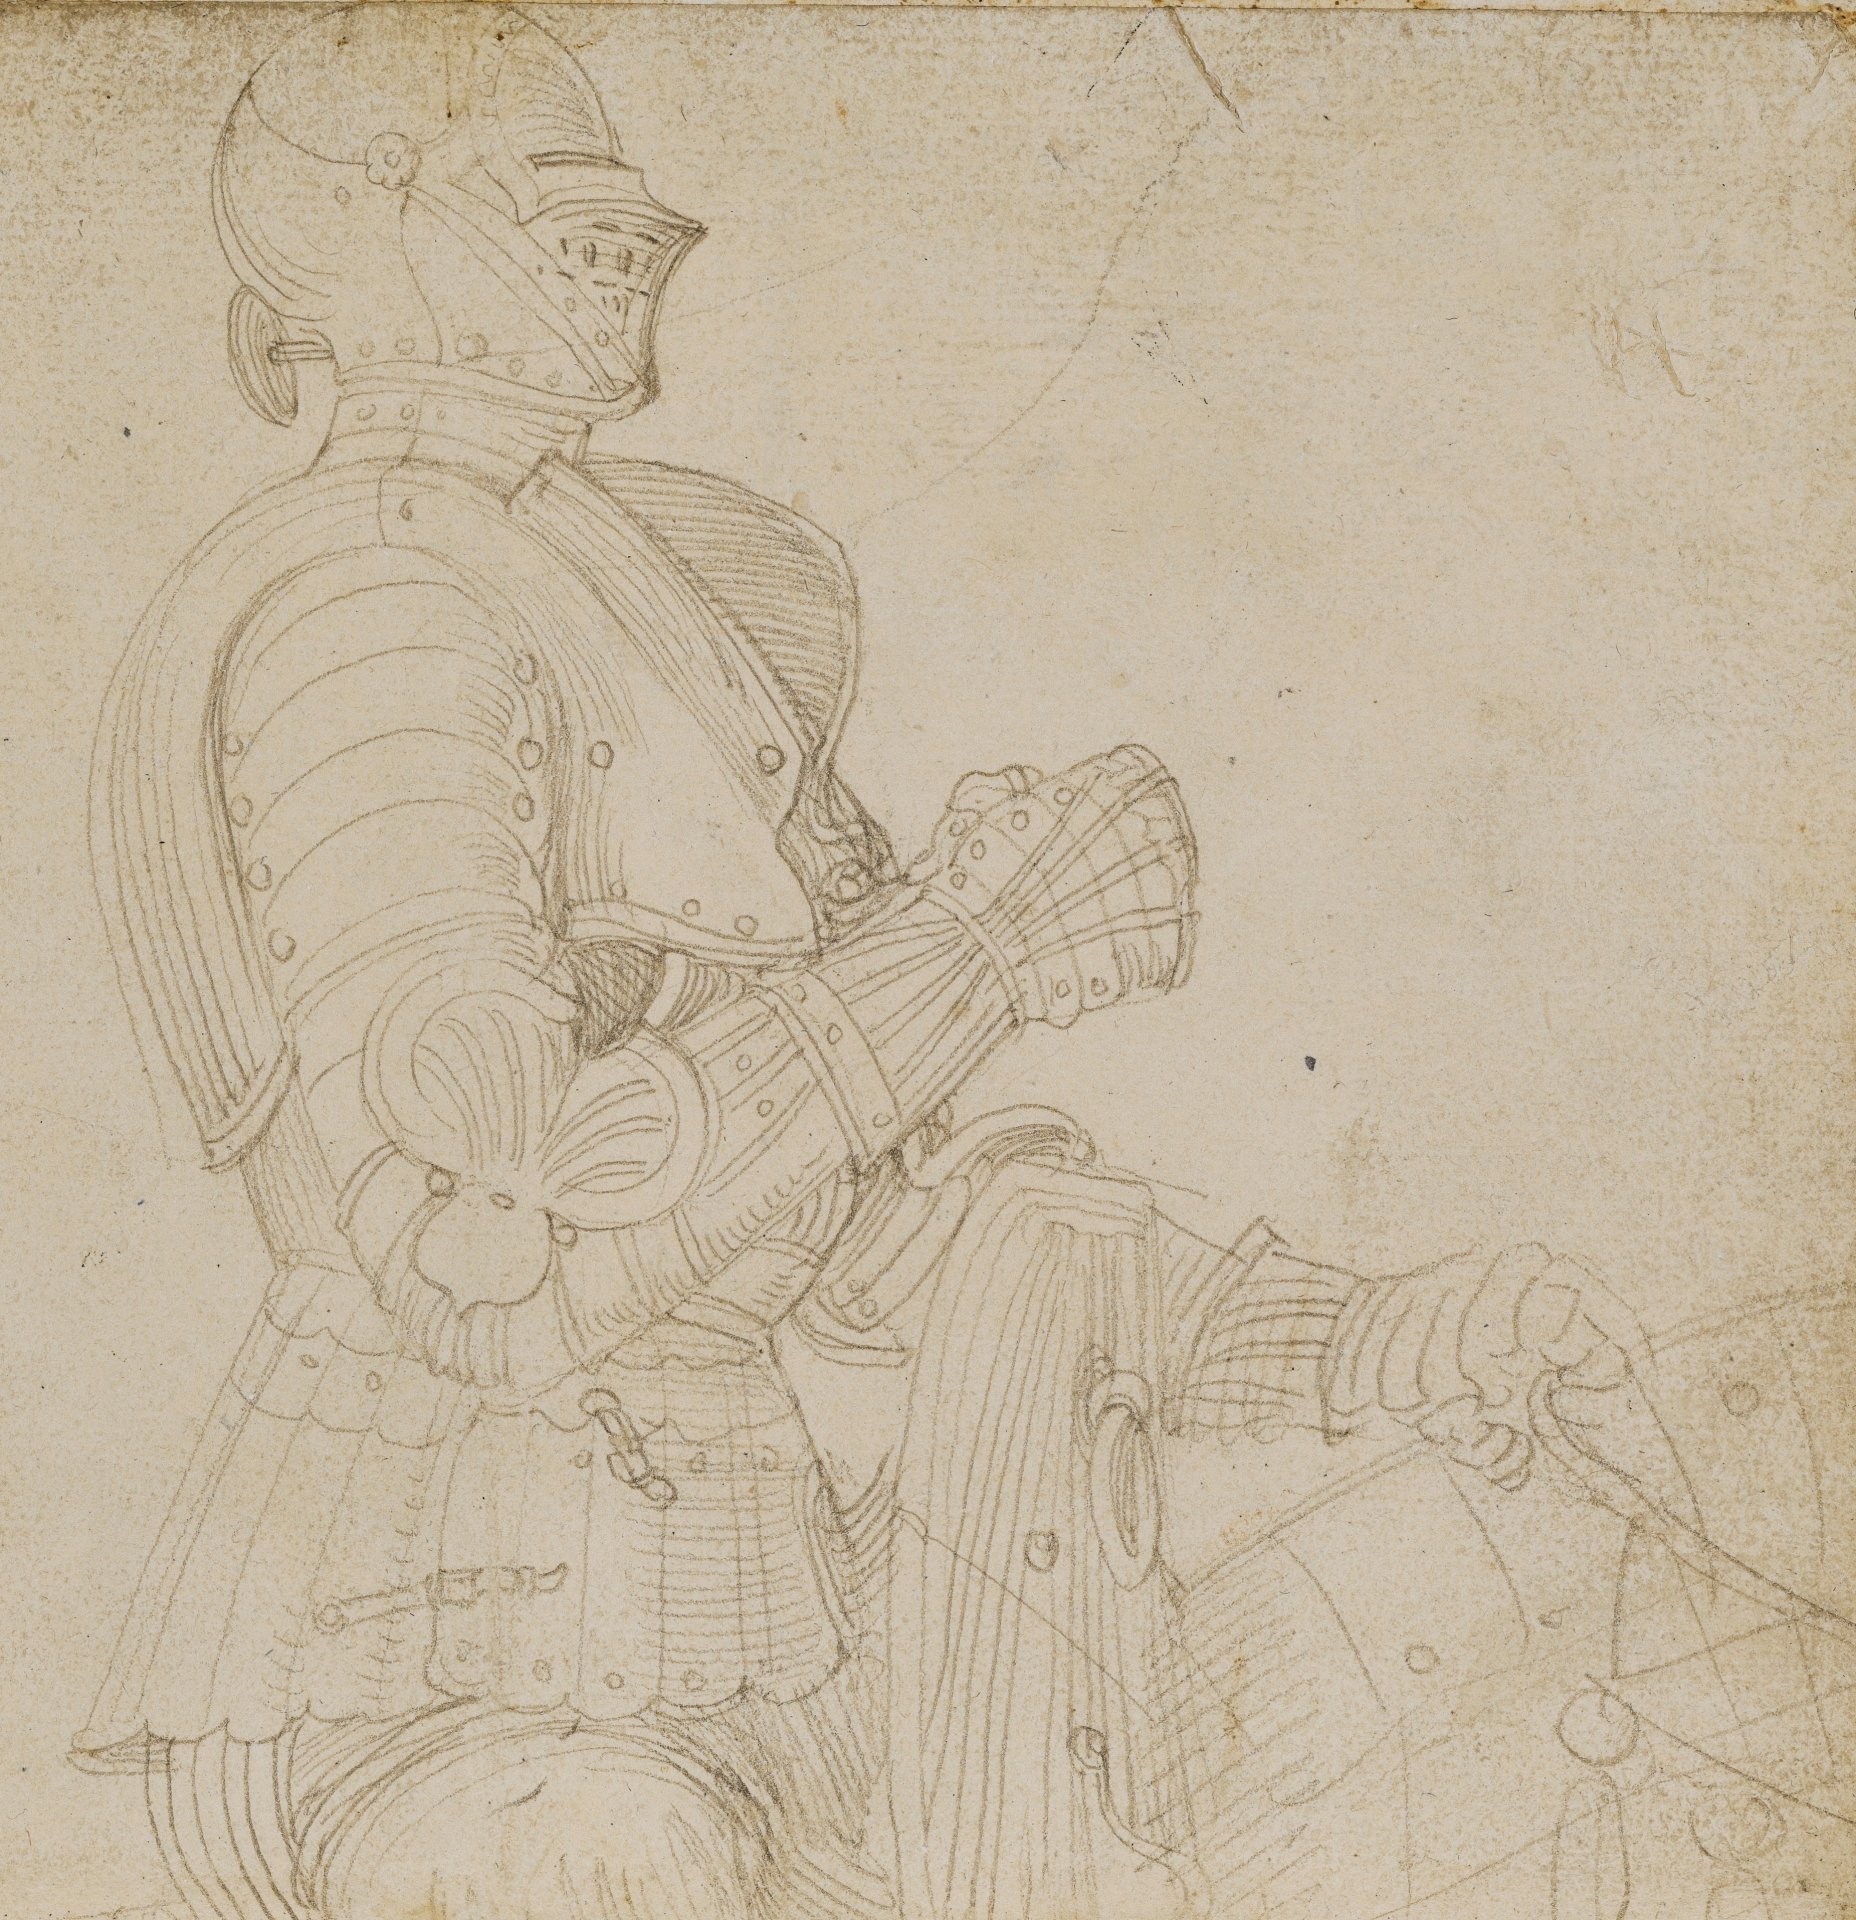 Abbildung einer Zeichnung aus dem Karlsruher Skizzenbuch des Renaissance-Künstlers Hans Baldung Grien. Zu sehen ist die Skizze eines Ritters zu Pferde.